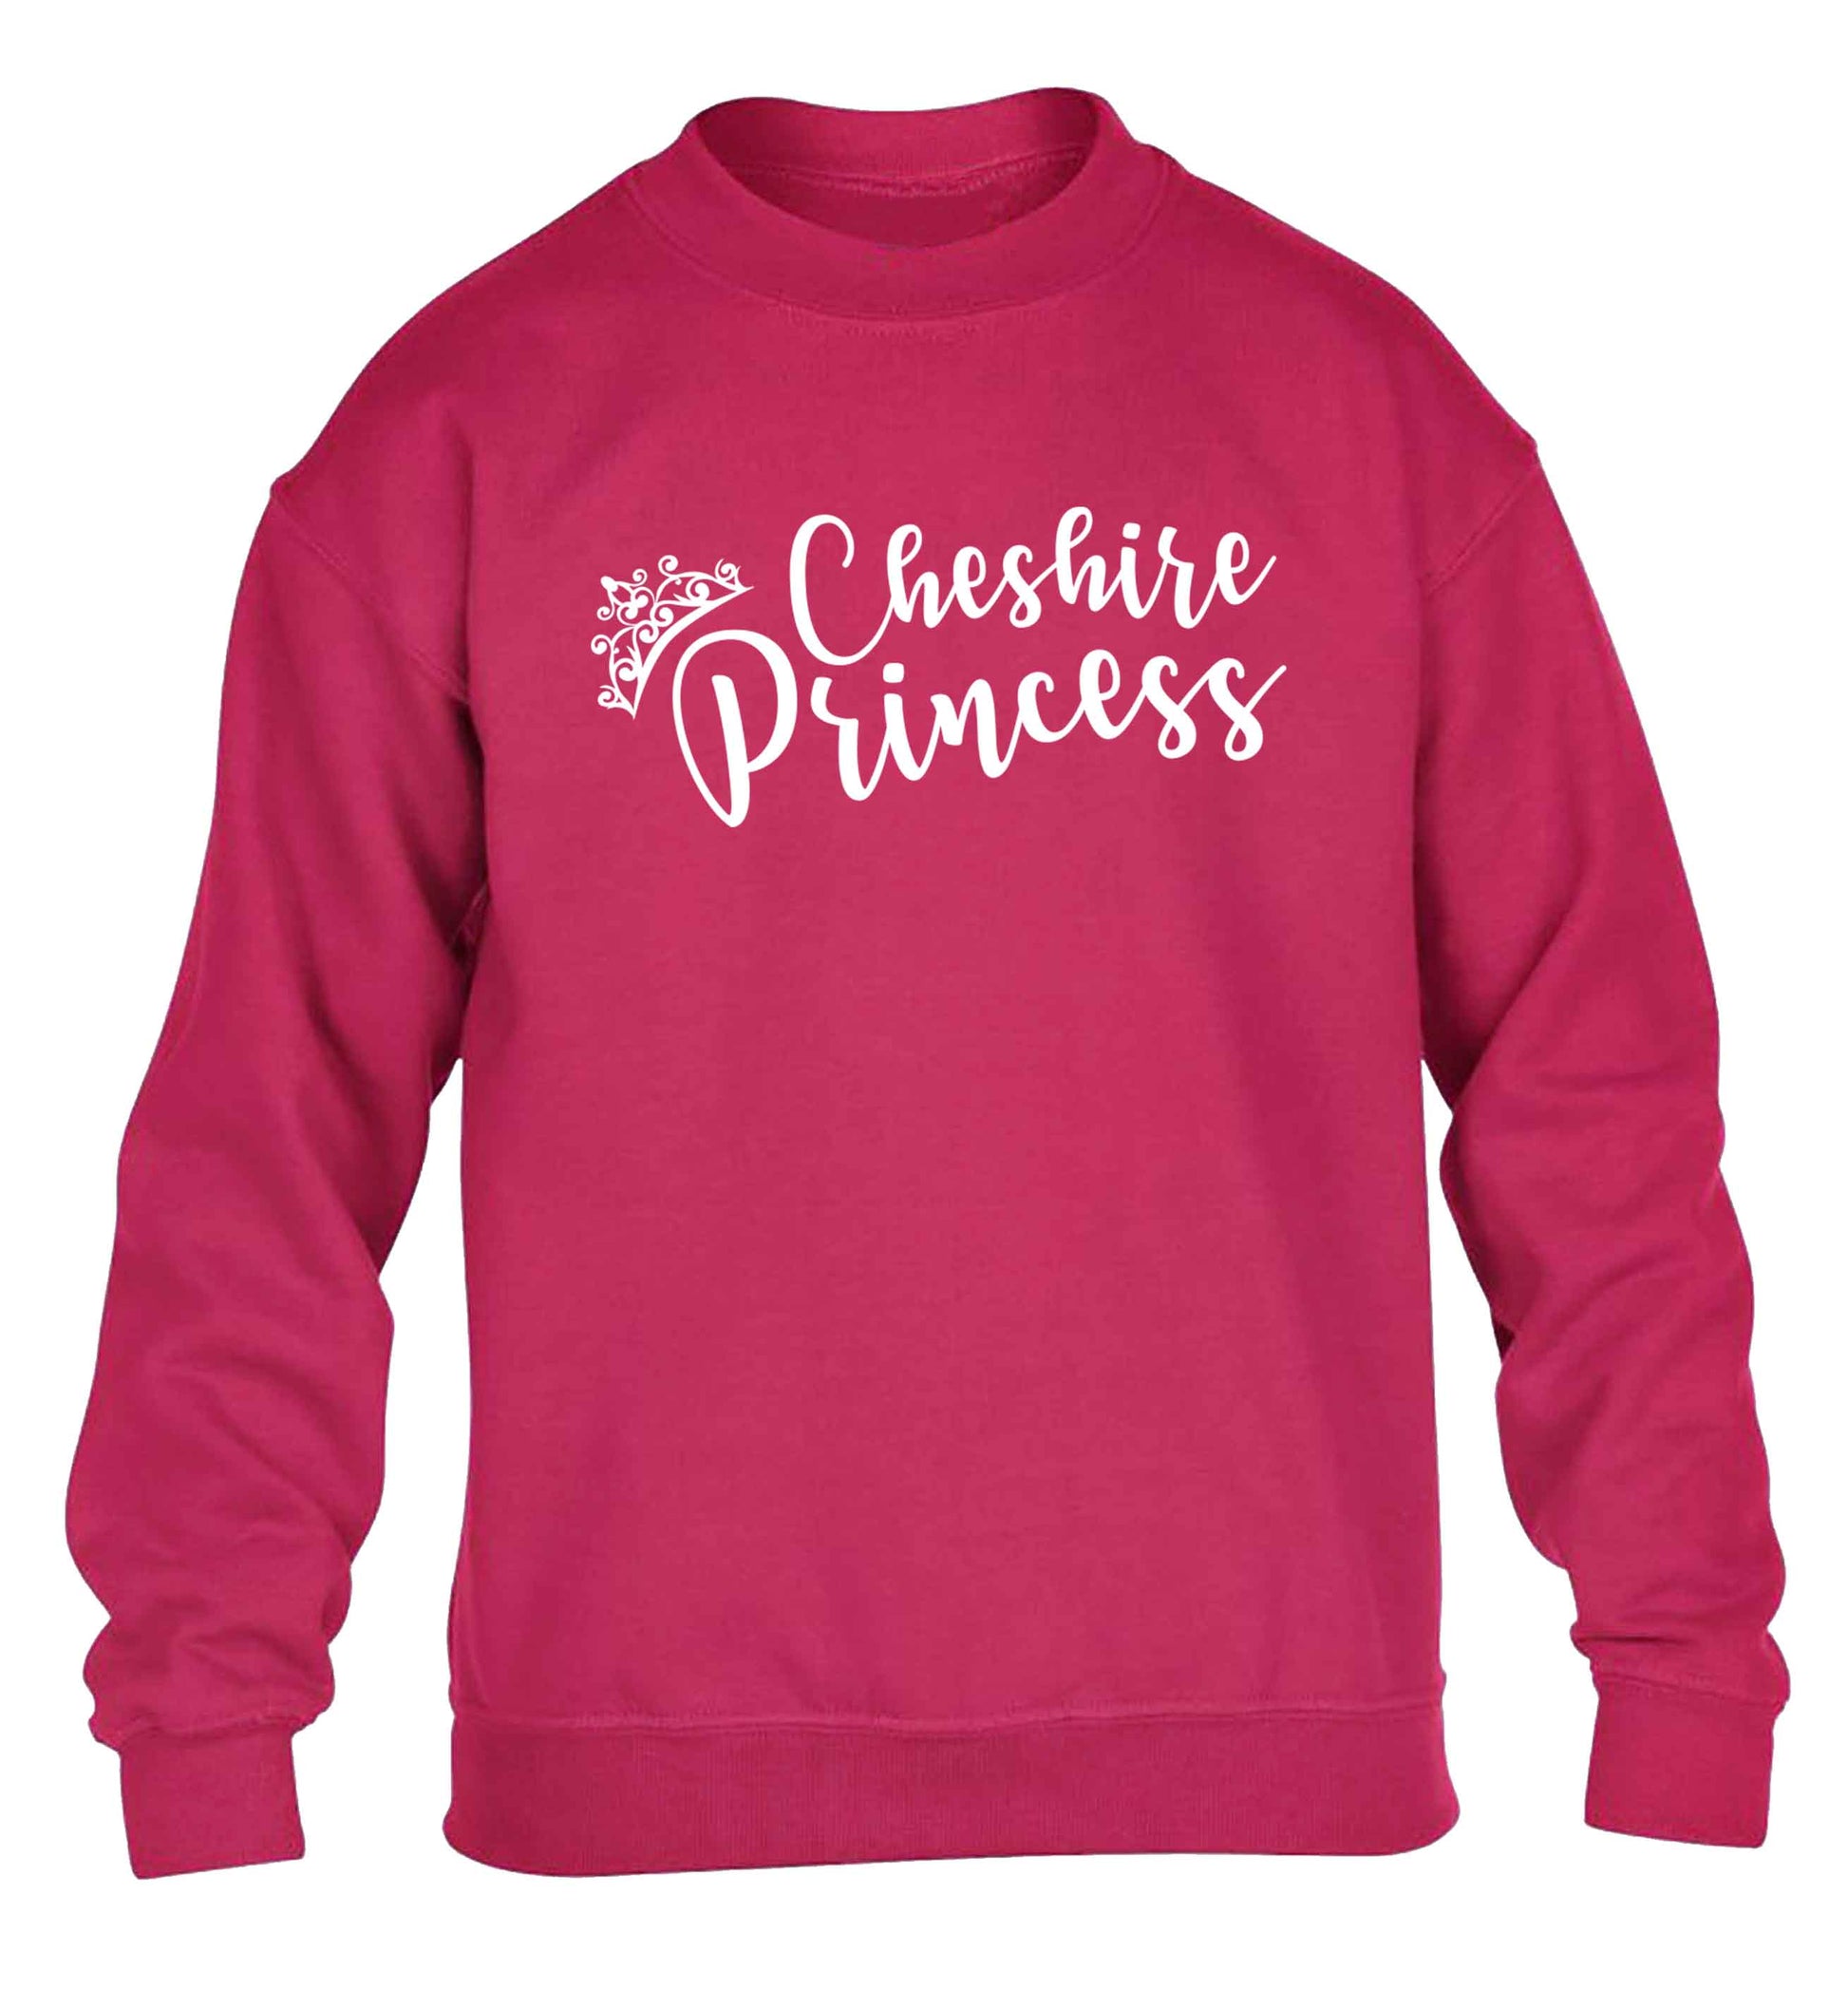 Cheshire princess children's pink sweater 12-13 Years